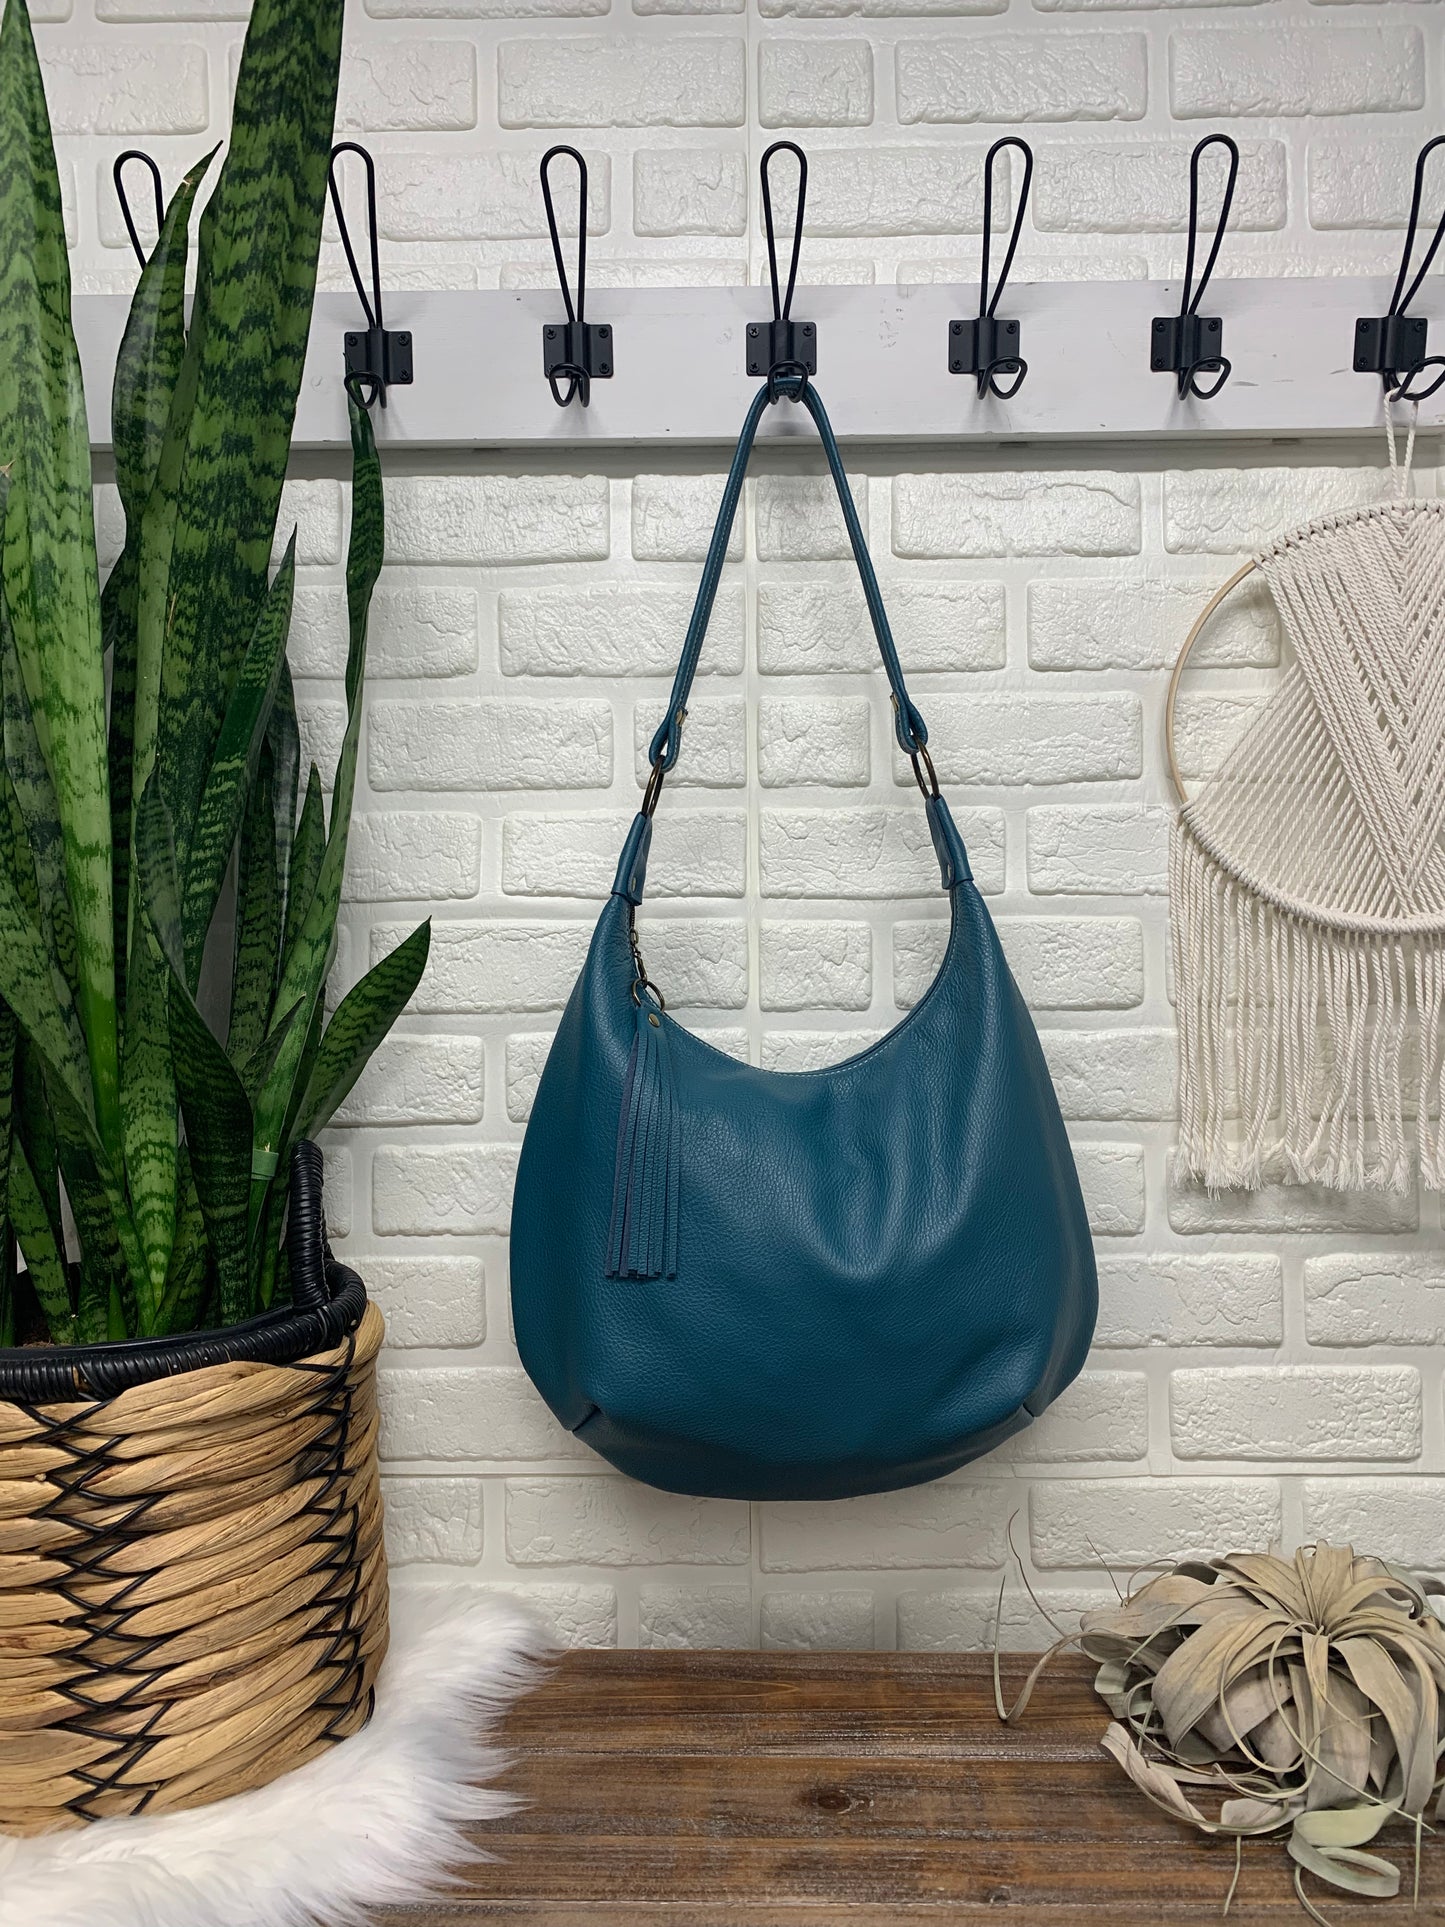 Teal leather hobo bag,  genuine leather handbag